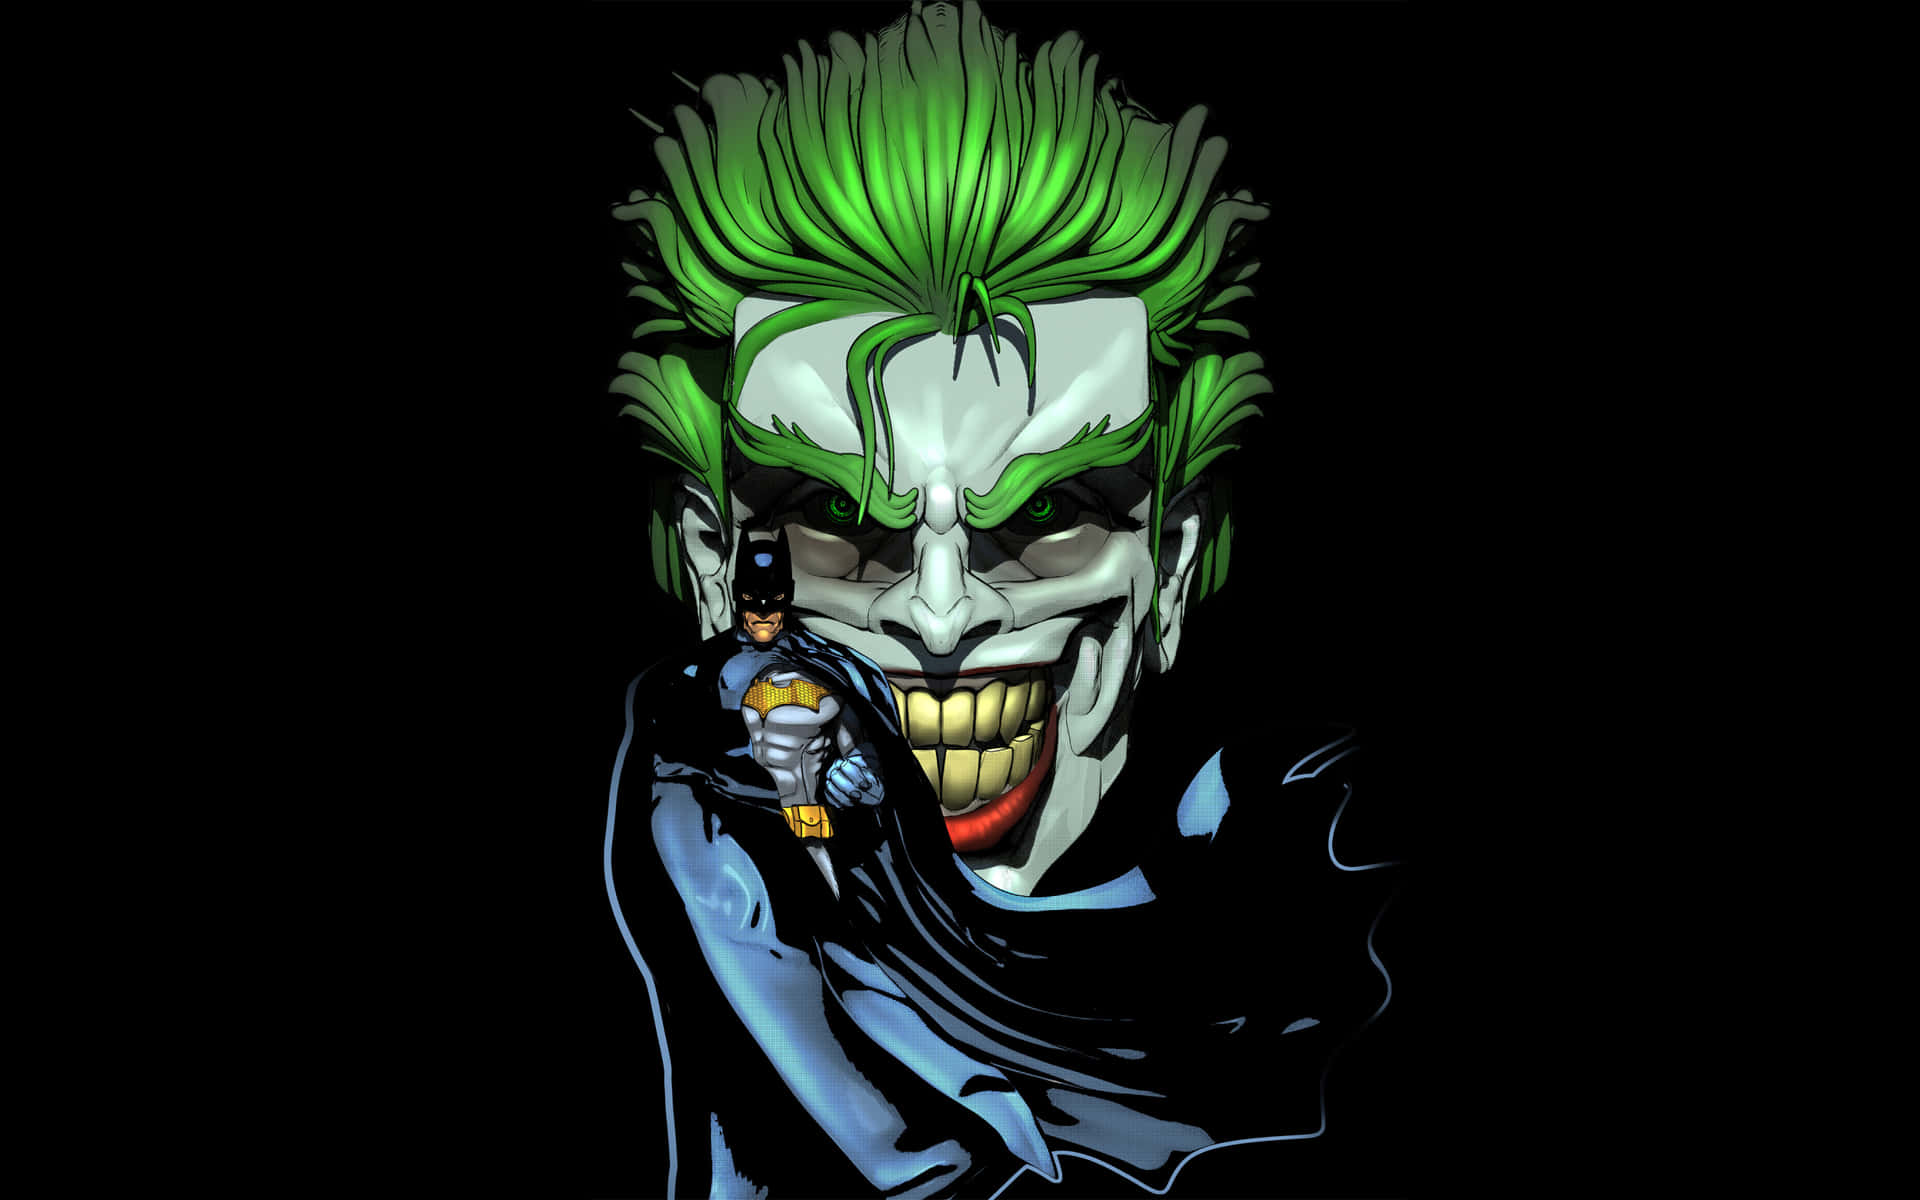 Den ikoniske skurk fra DC-tegneserier, Joker, er fremhævet på denne tapet. Wallpaper